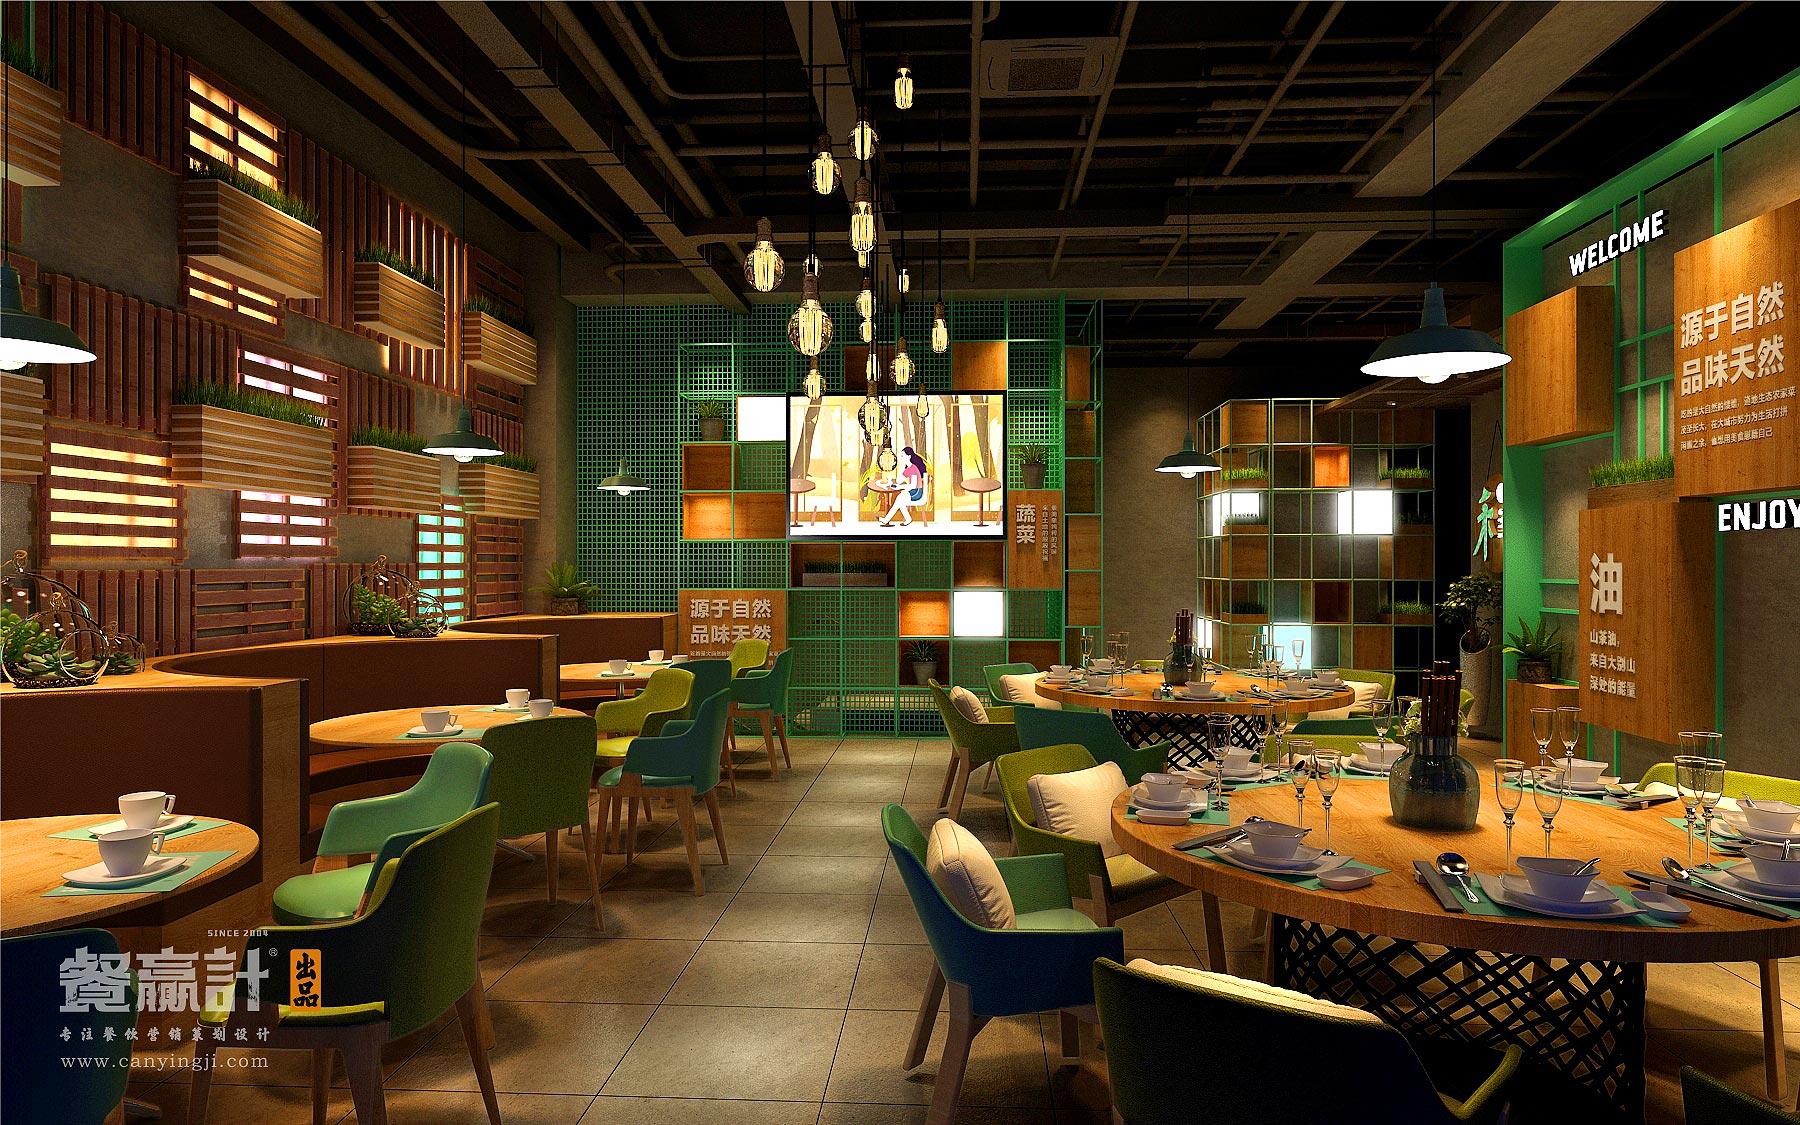 深圳生态主题餐厅空间升级改造设计——禾π网红店创意空间